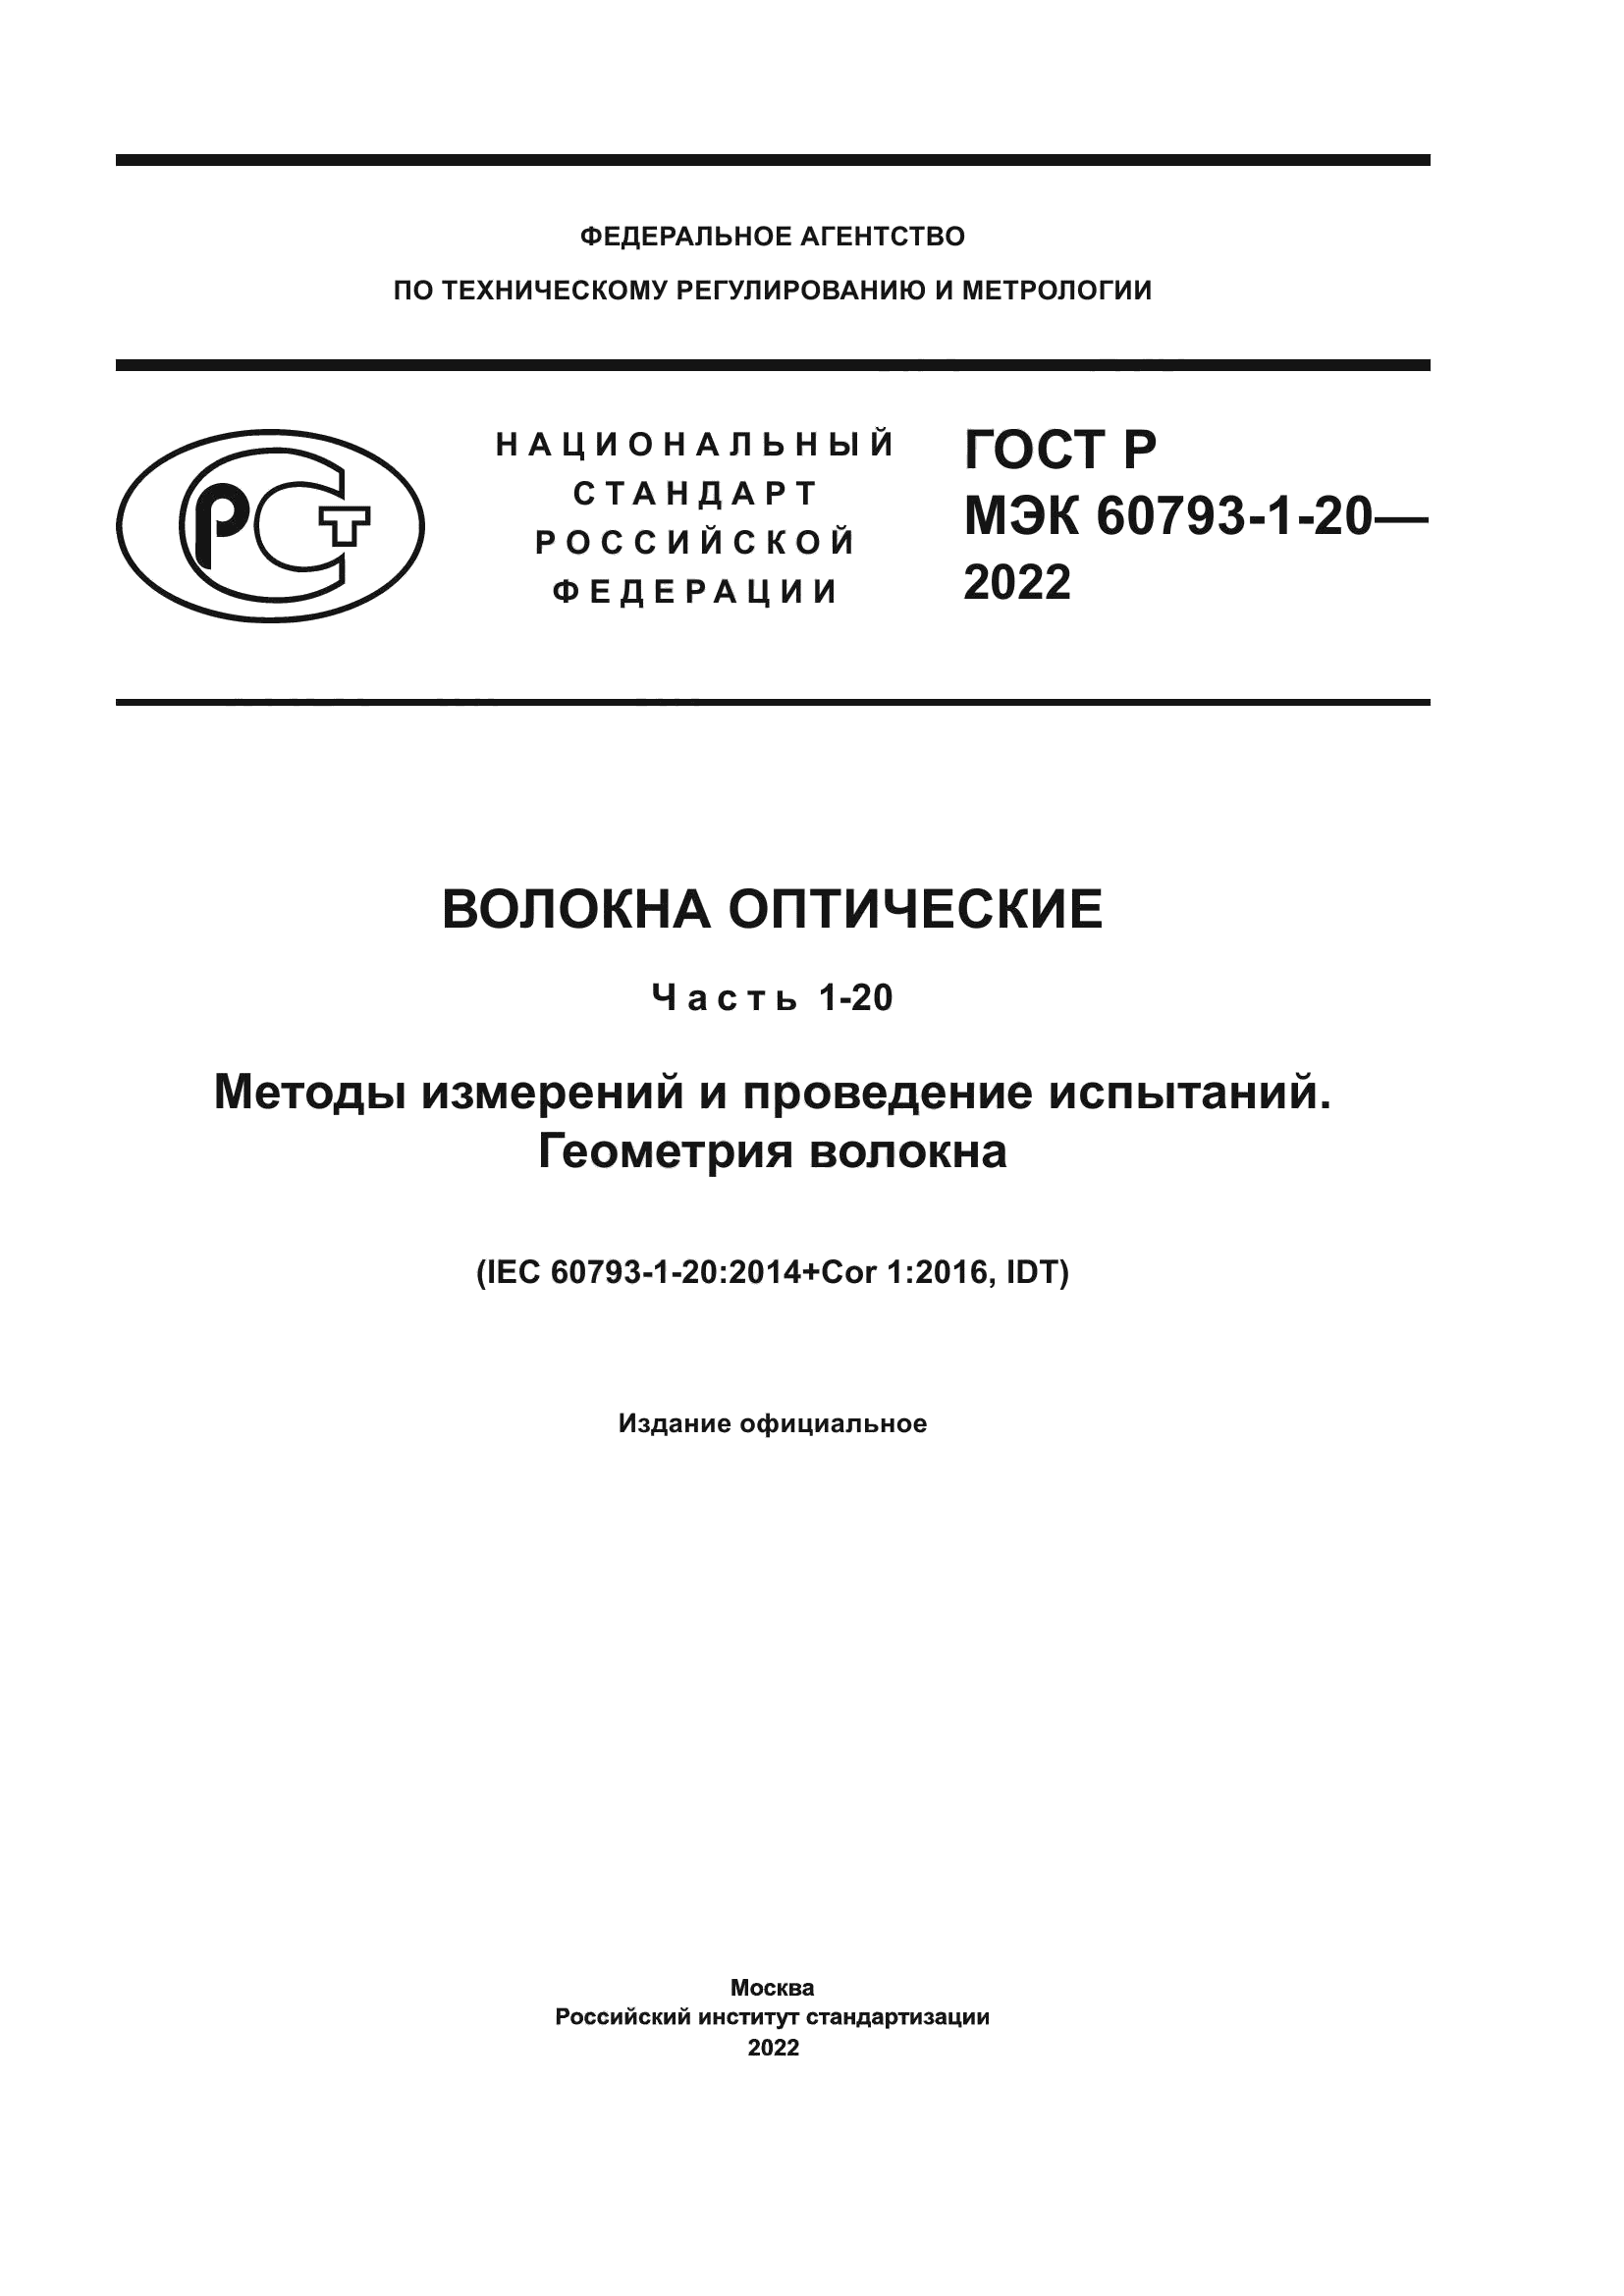 ГОСТ Р МЭК 60793-1-20-2022